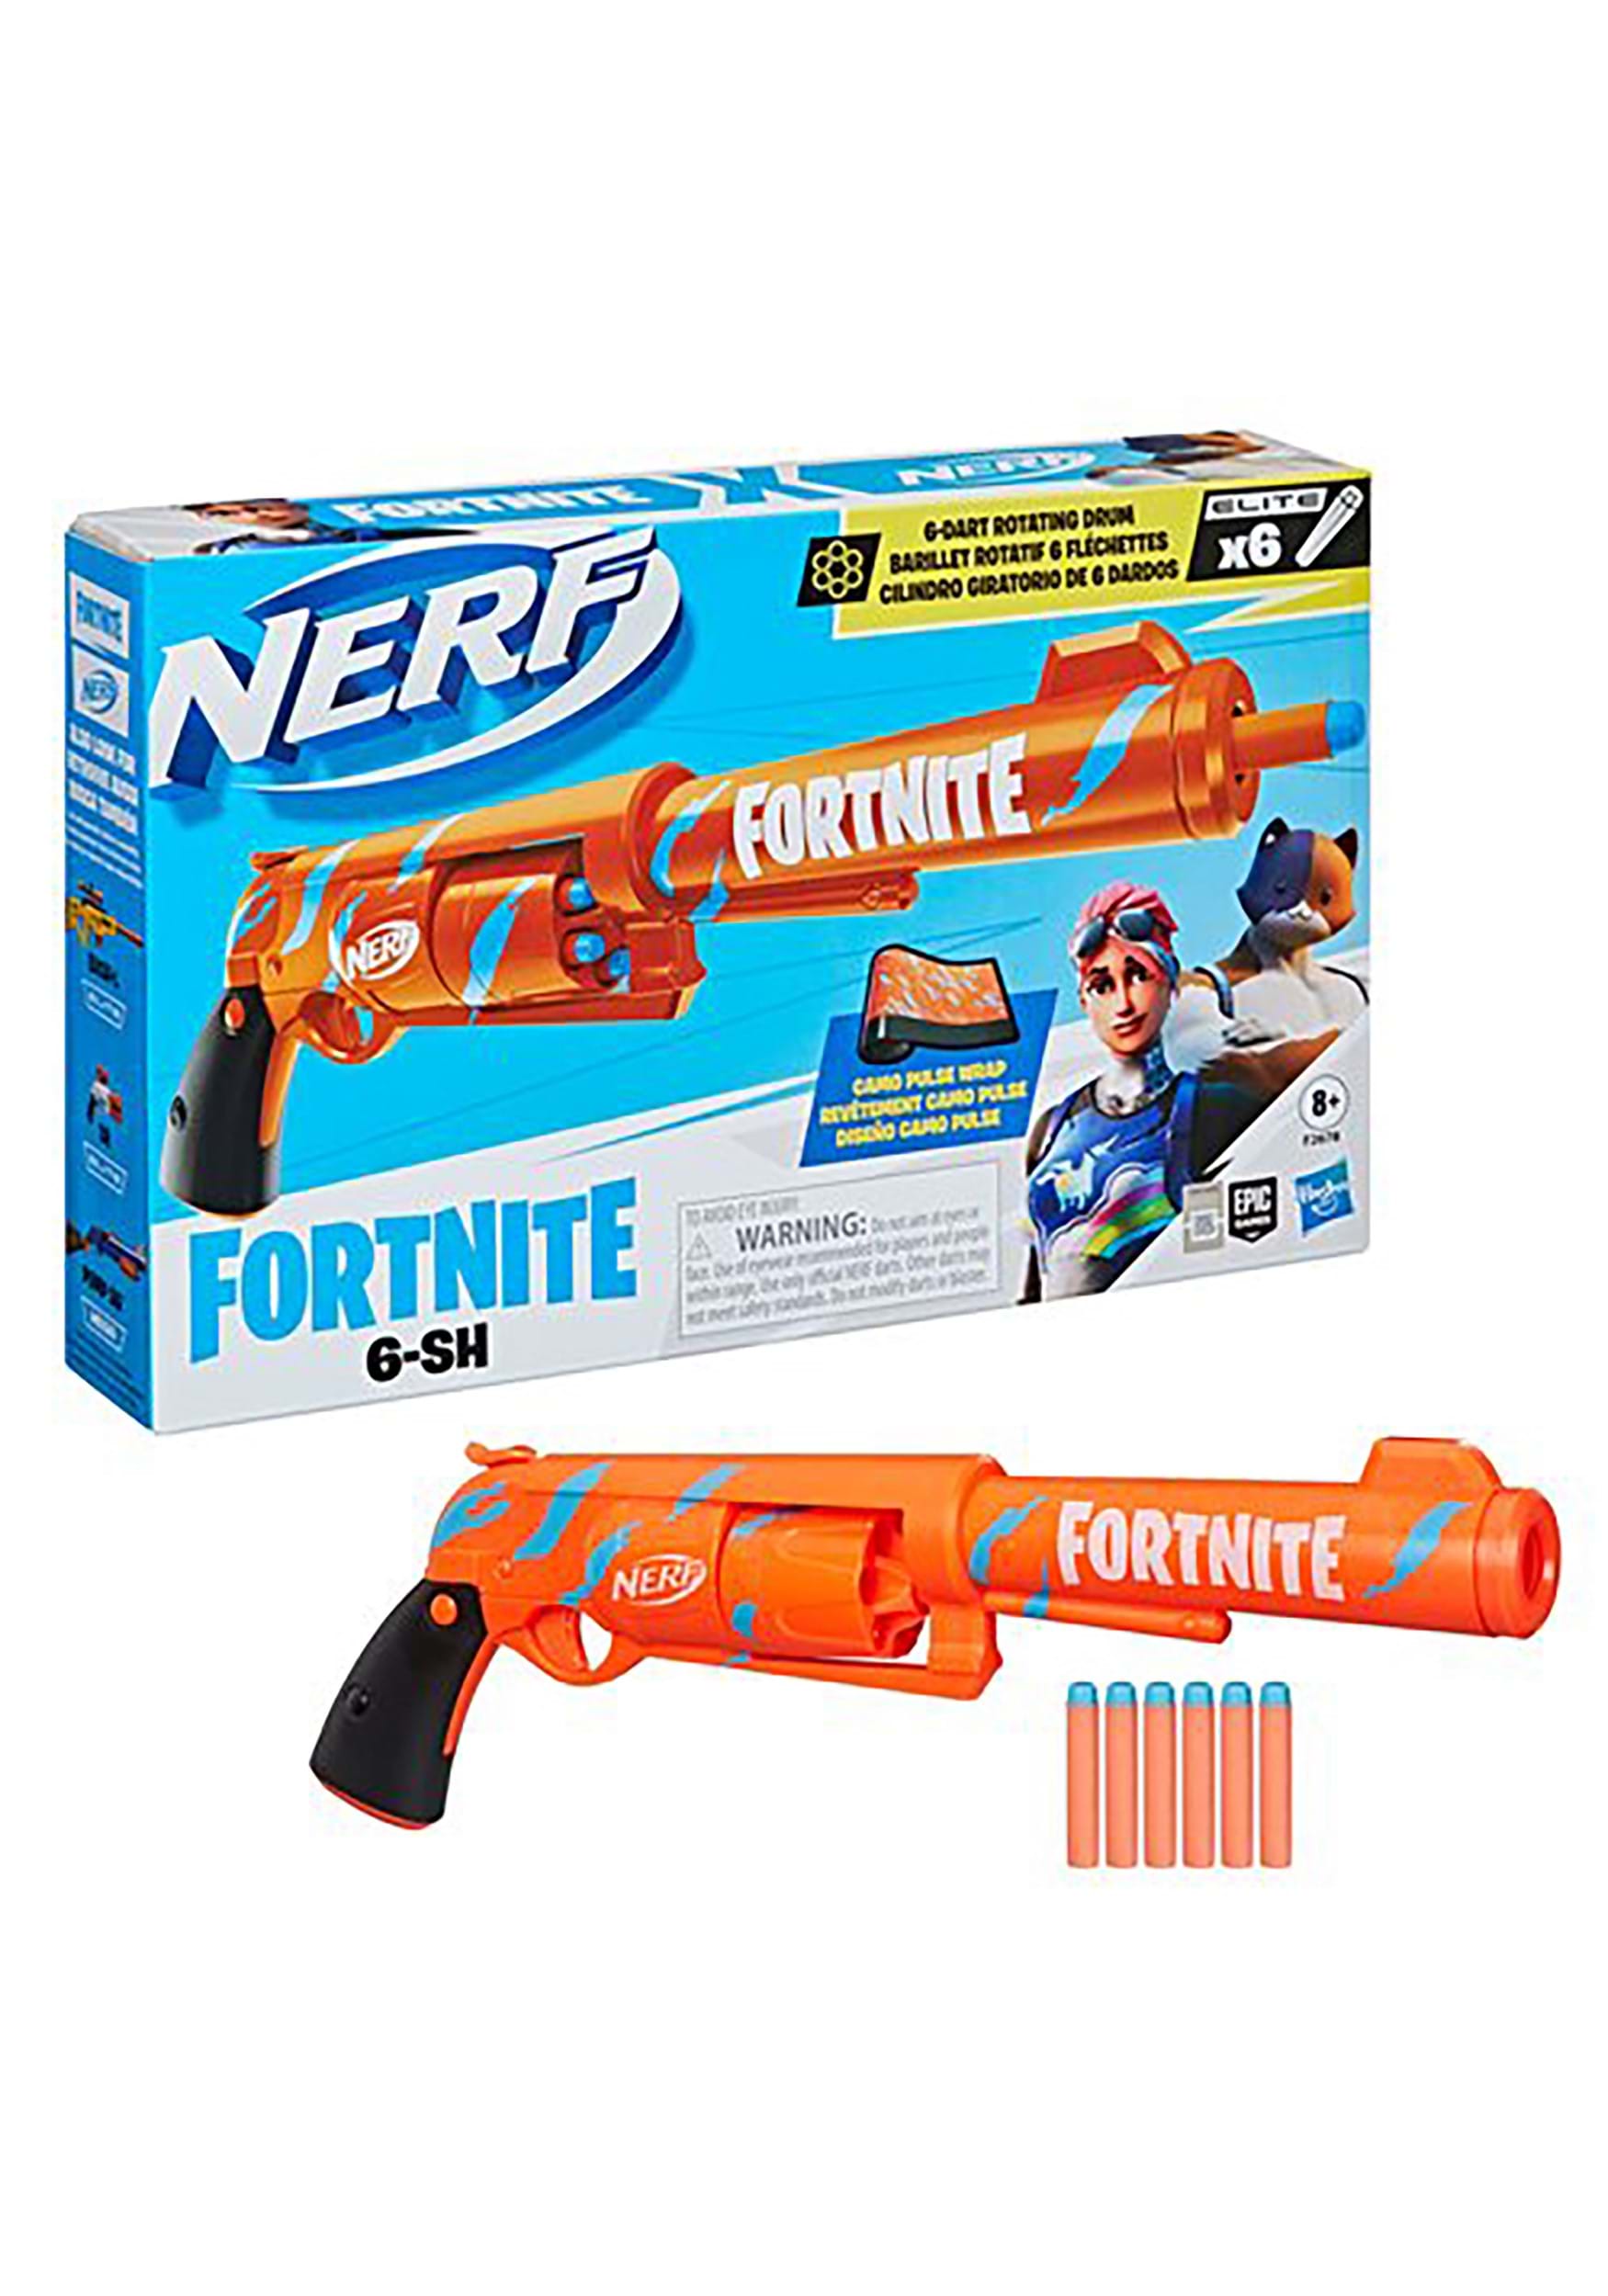 Fortnite Kids Nerf 6-SH Dart Blaster